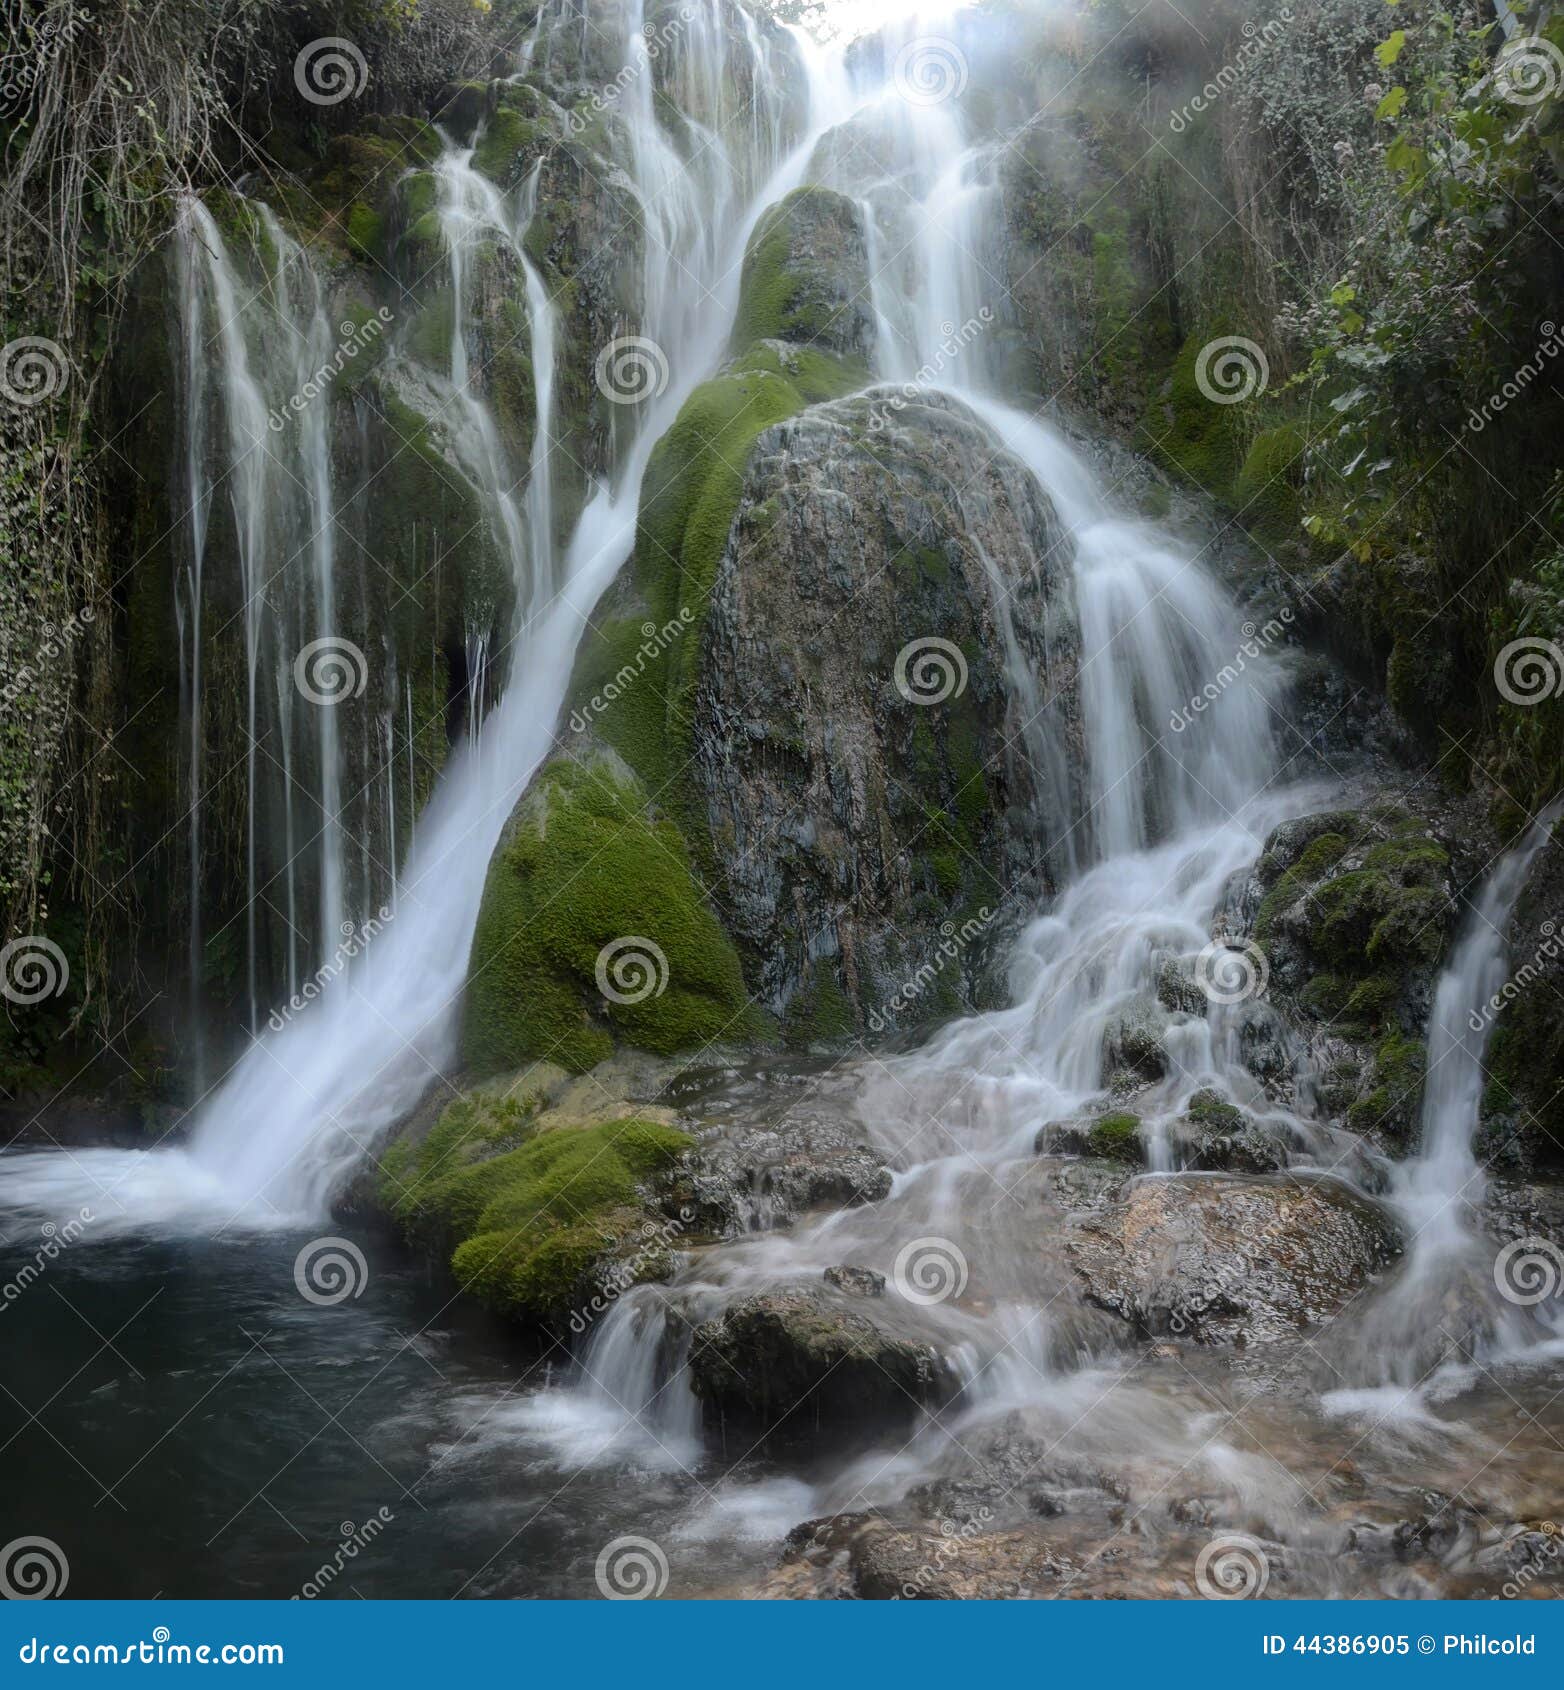 water cascade